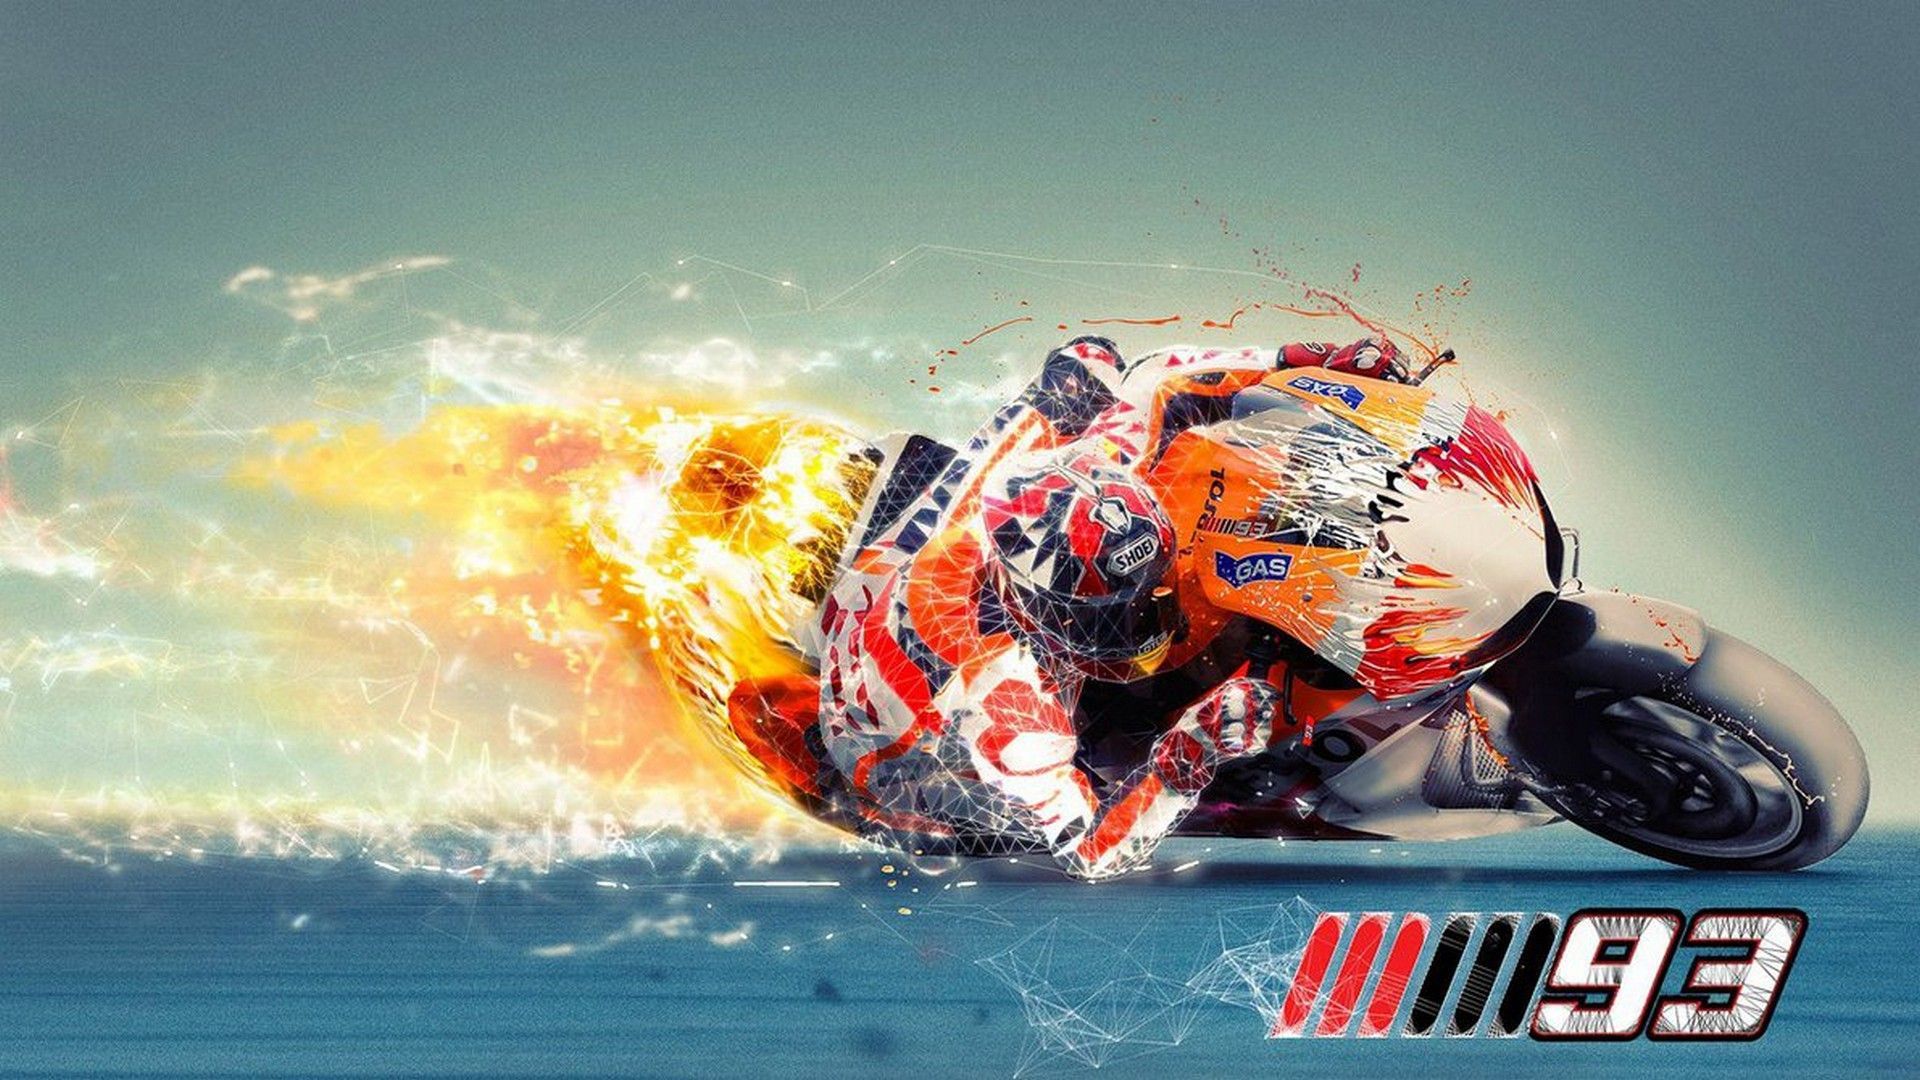 Amazing Marc Marquez Wallpaper HD Live Wallpaper HD. Marc marquez, Motogp, Motorbikes